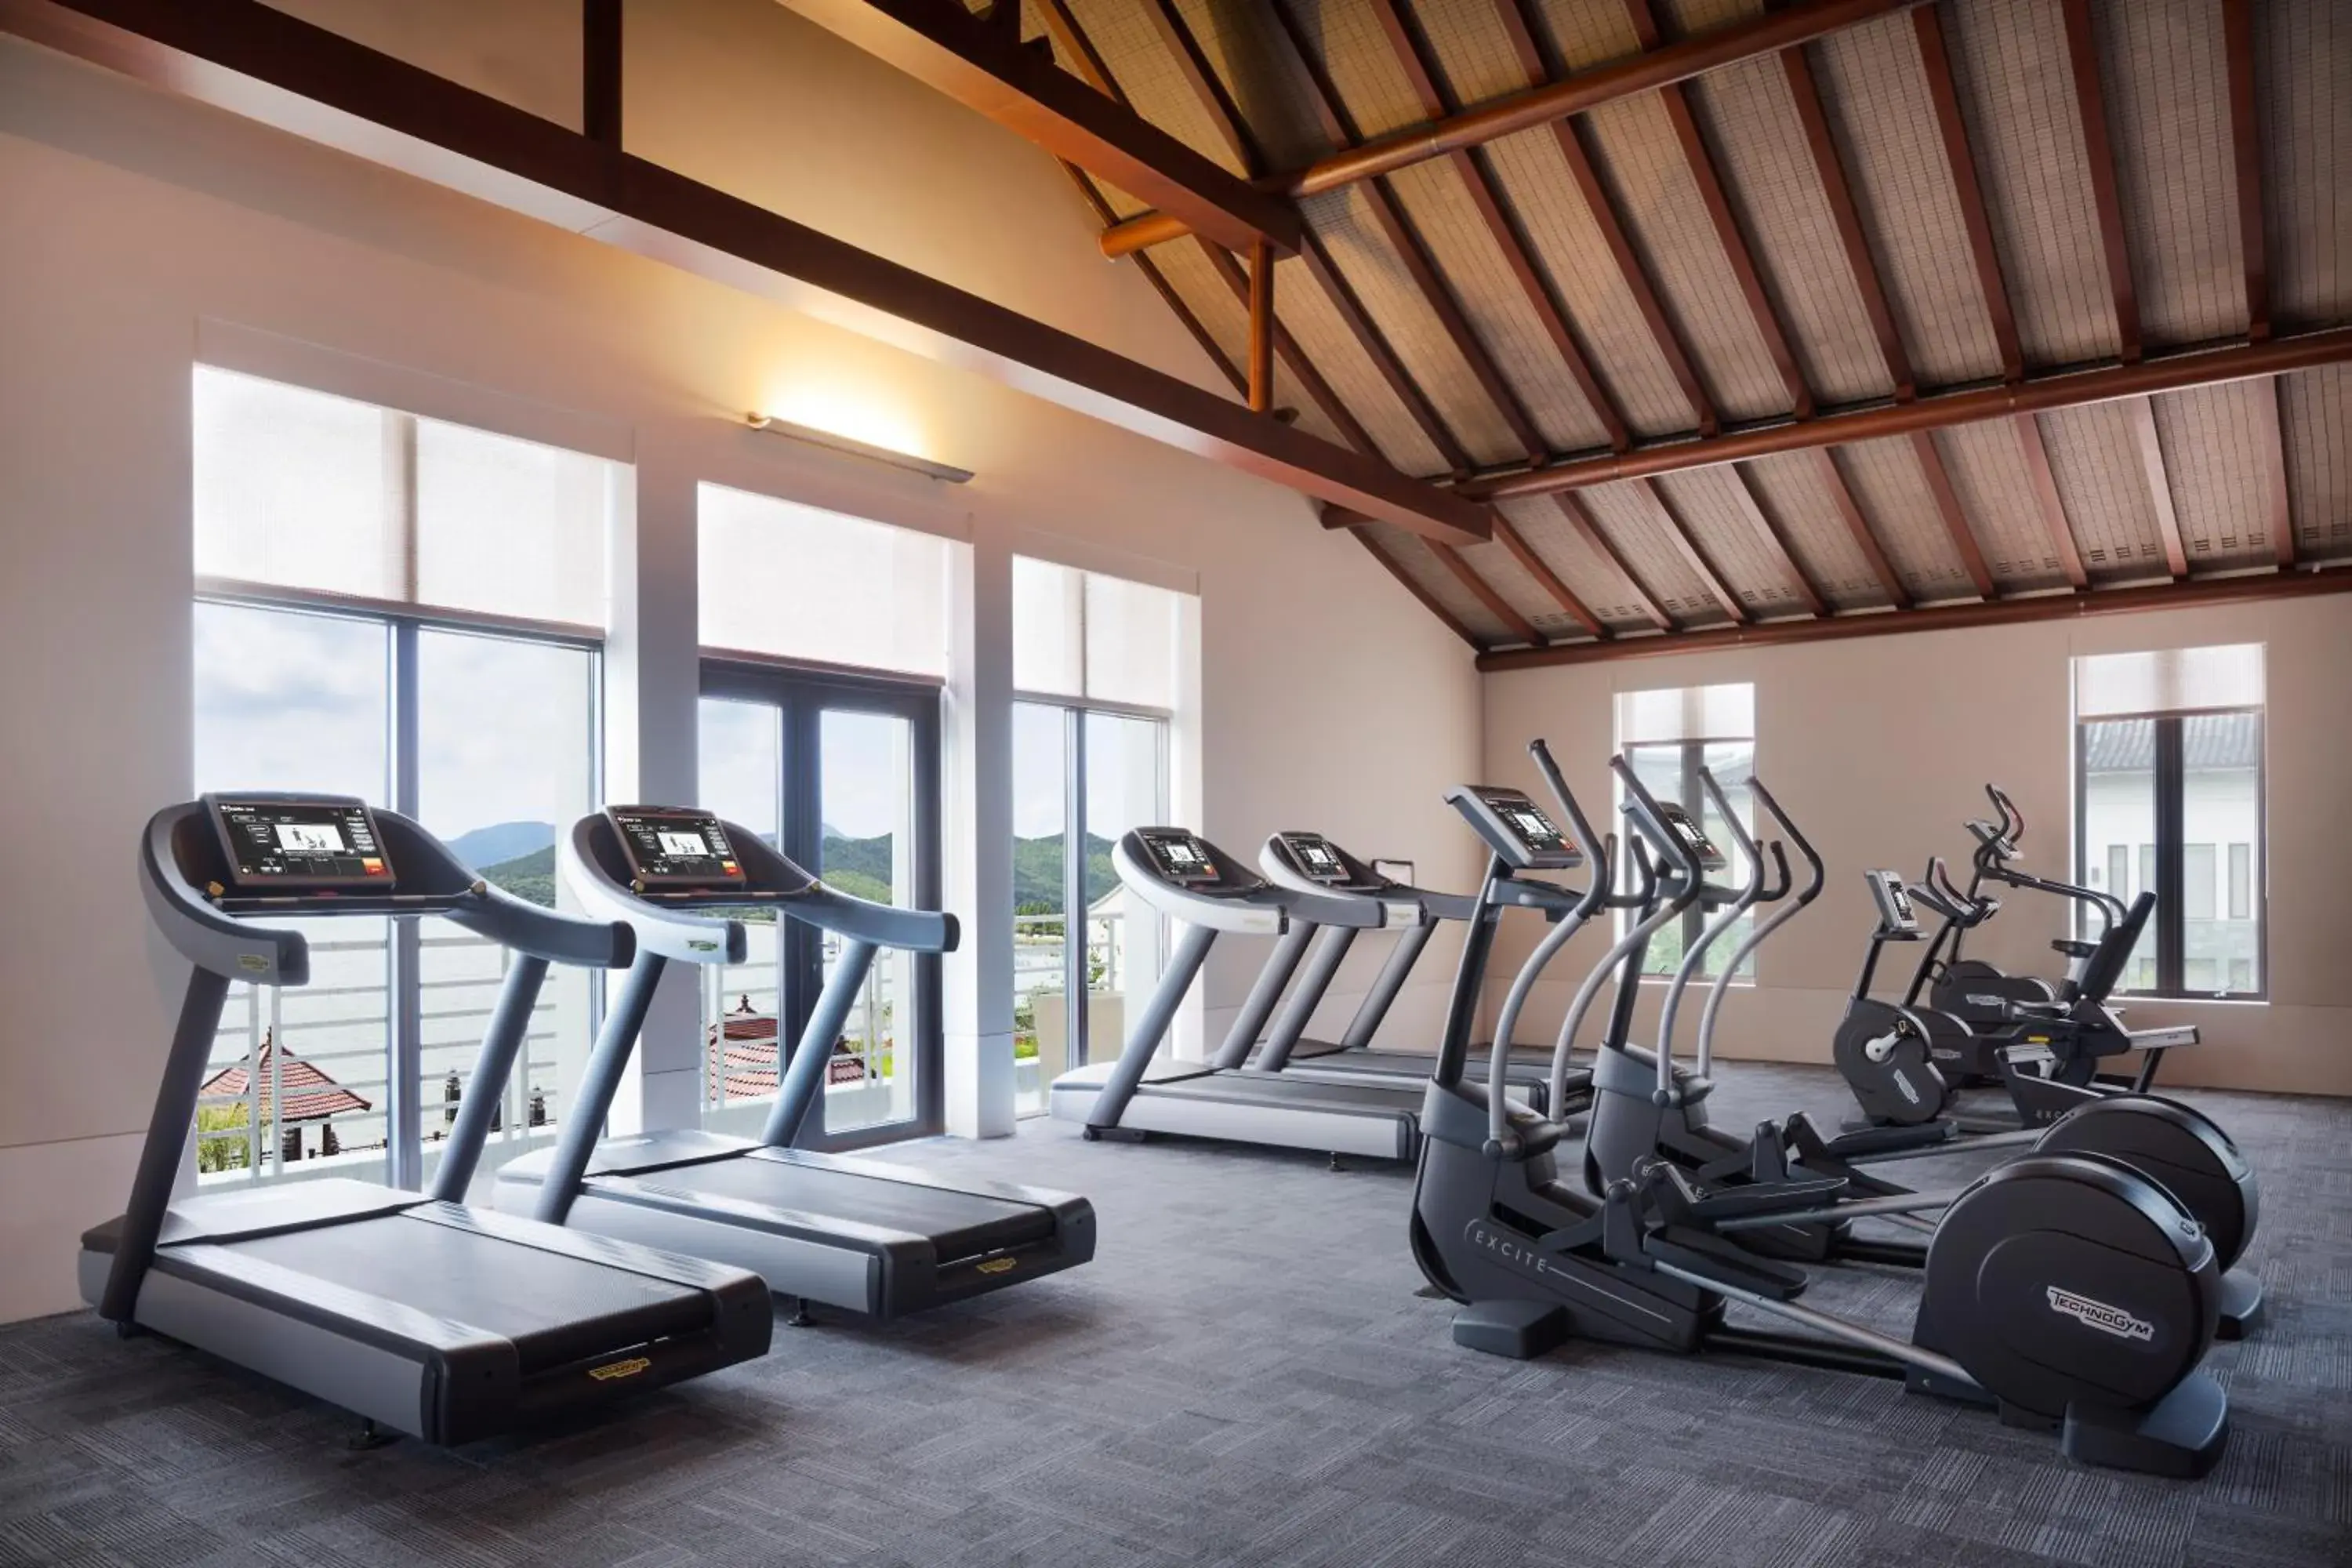 Fitness centre/facilities, Fitness Center/Facilities in Park Hyatt Ningbo Resort & Spa